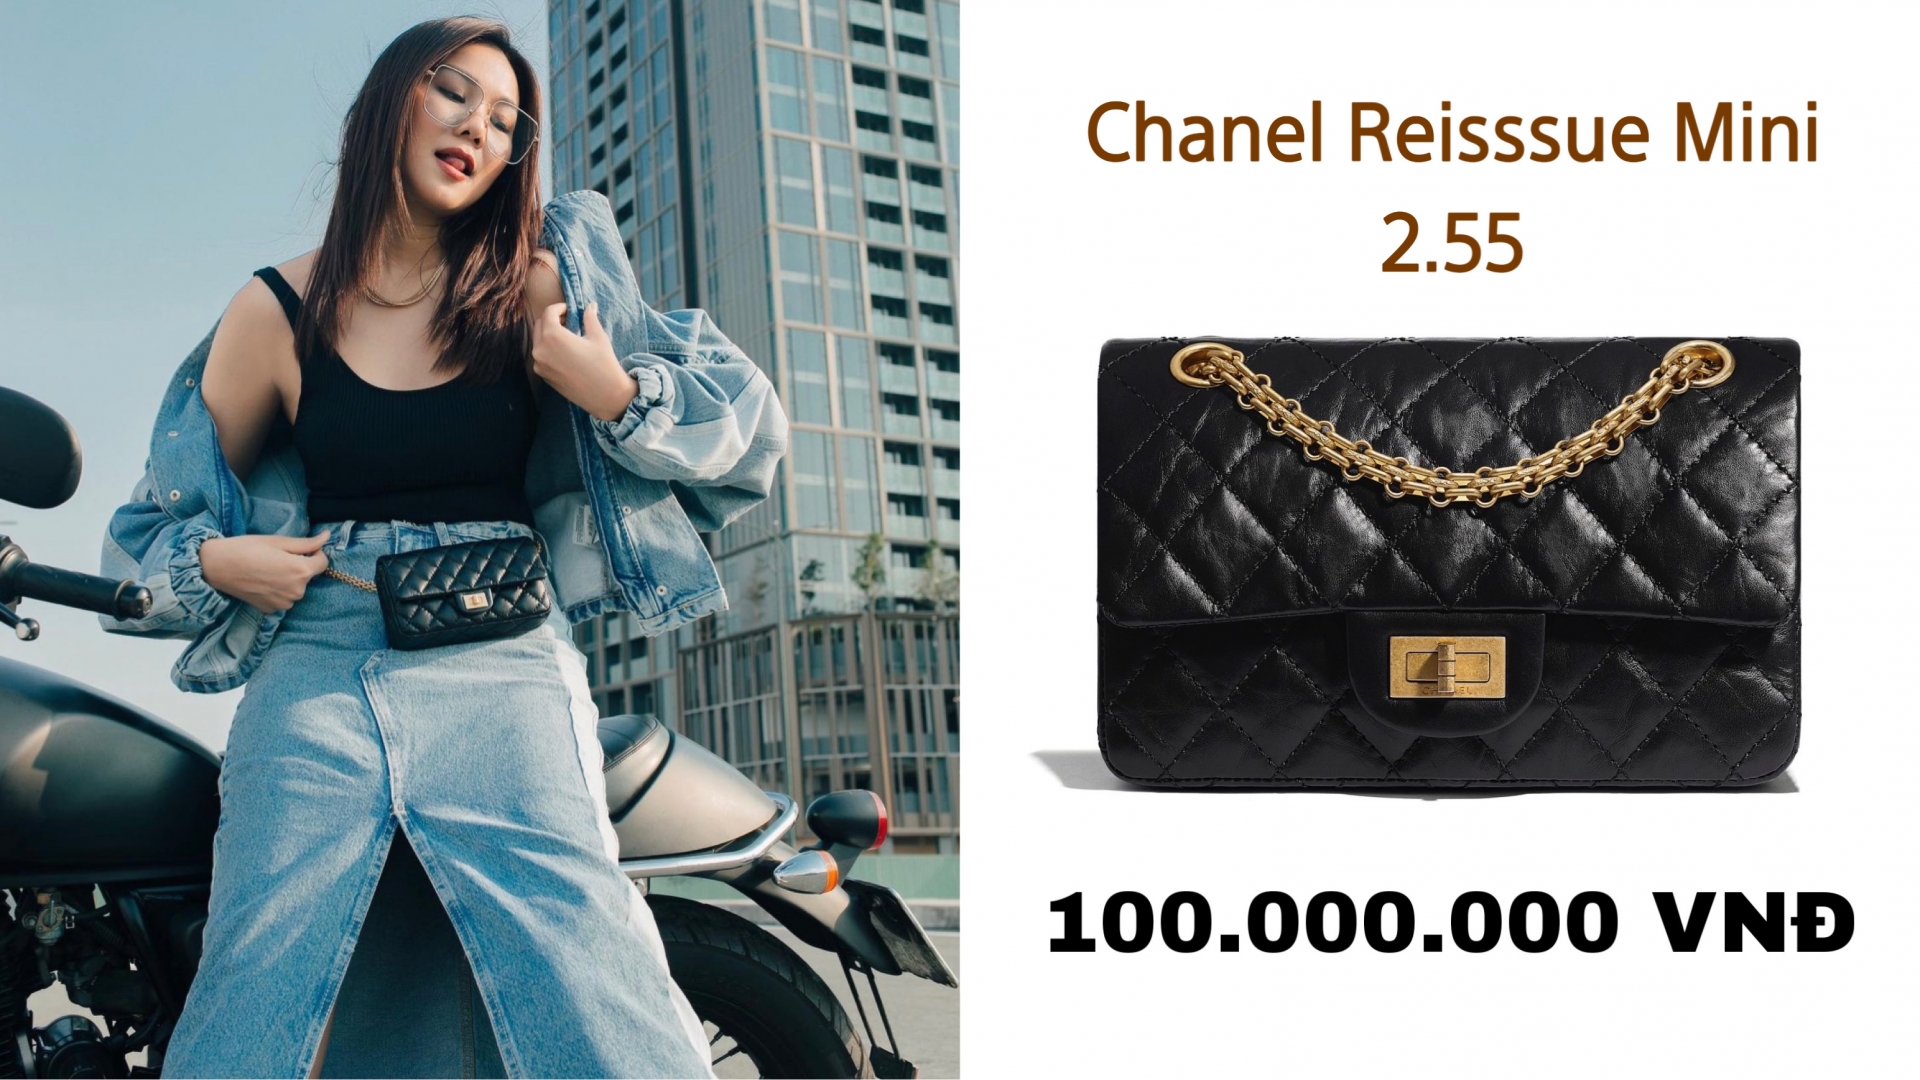 Ngoài những mẫu túi Chanel size to, Thanh Hằng cũng sở hữu những item nhỏ xinh cực hot, điển hình là chiếc Chanel Reissue Mini có giá xấp xỉ 100 triệu này.